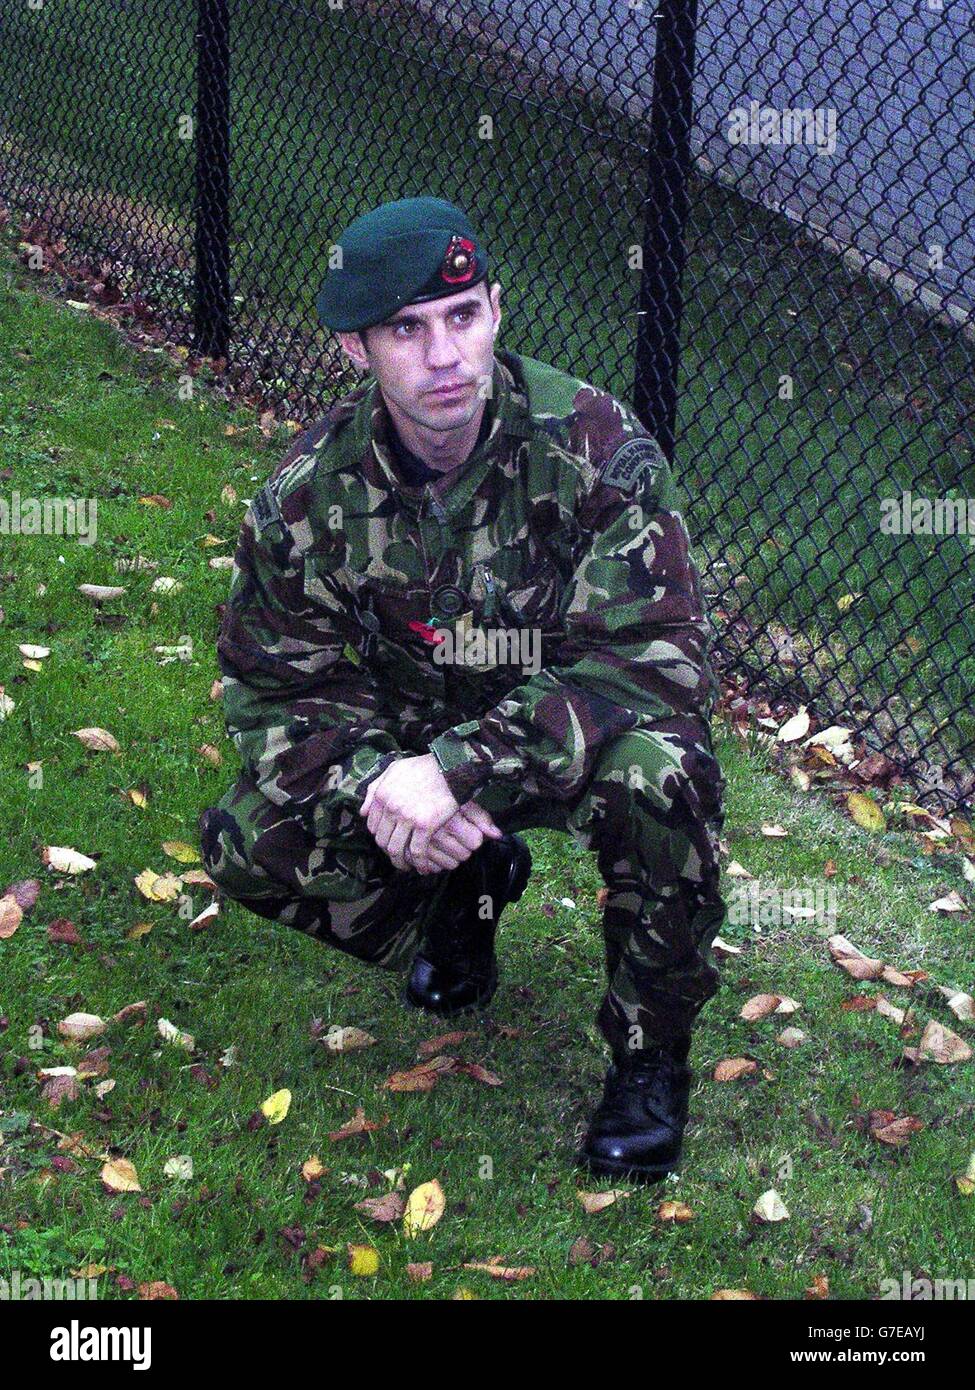 Royal Marine Tom McPhee spricht mit den Medien im Royal Marine Commando Training Camp in Lympstone, in der Nähe von Exmouth, Devon. Die Royal Marine wurde als Held gefeiert und sprach von seinen Bemühungen, die Opfer des schrecklichen Zugunglüges in Berkshire zu retten. Tom McPhee, 34, sagte, dass der Tod der neunjährigen Louella Main, die er vergeblich versuchte, die Blutung zu stoppen, ihn „sehr schockiert“ gemacht habe. Aber er konnte Sharmin Bacchus, 37, am Leben erhalten, indem er mit ihr redete und ihre Hand drückte, damit sie nicht aus dem Bewusstsein schlüpfte. Stockfoto